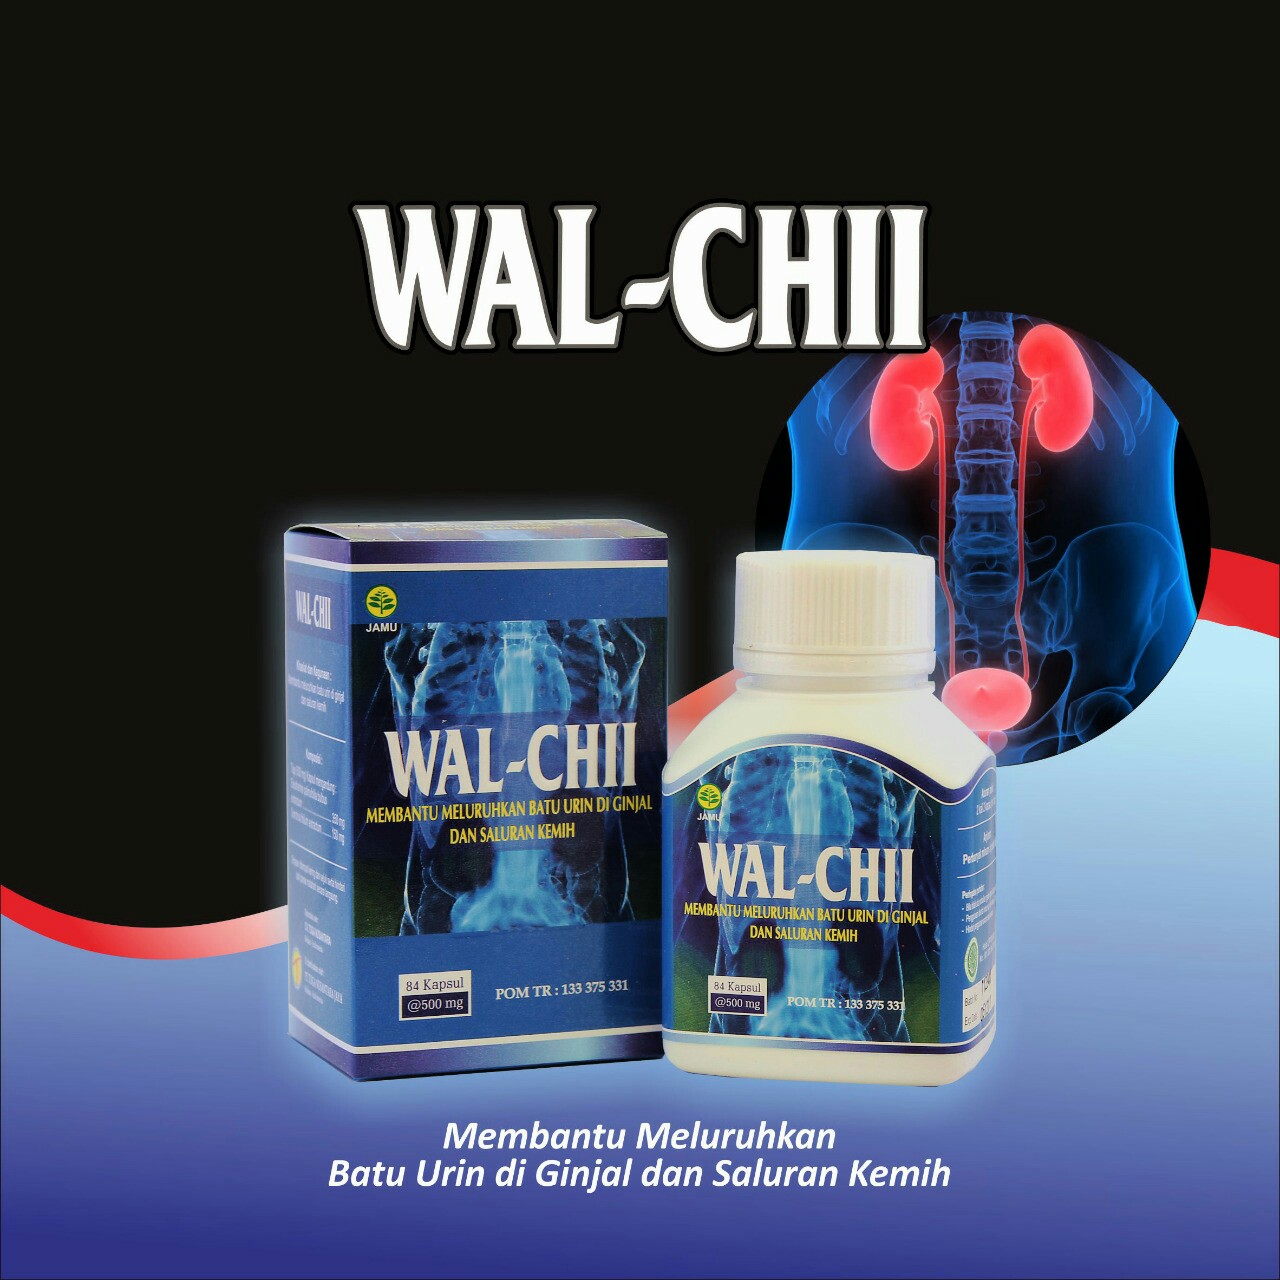 Wal-Chii